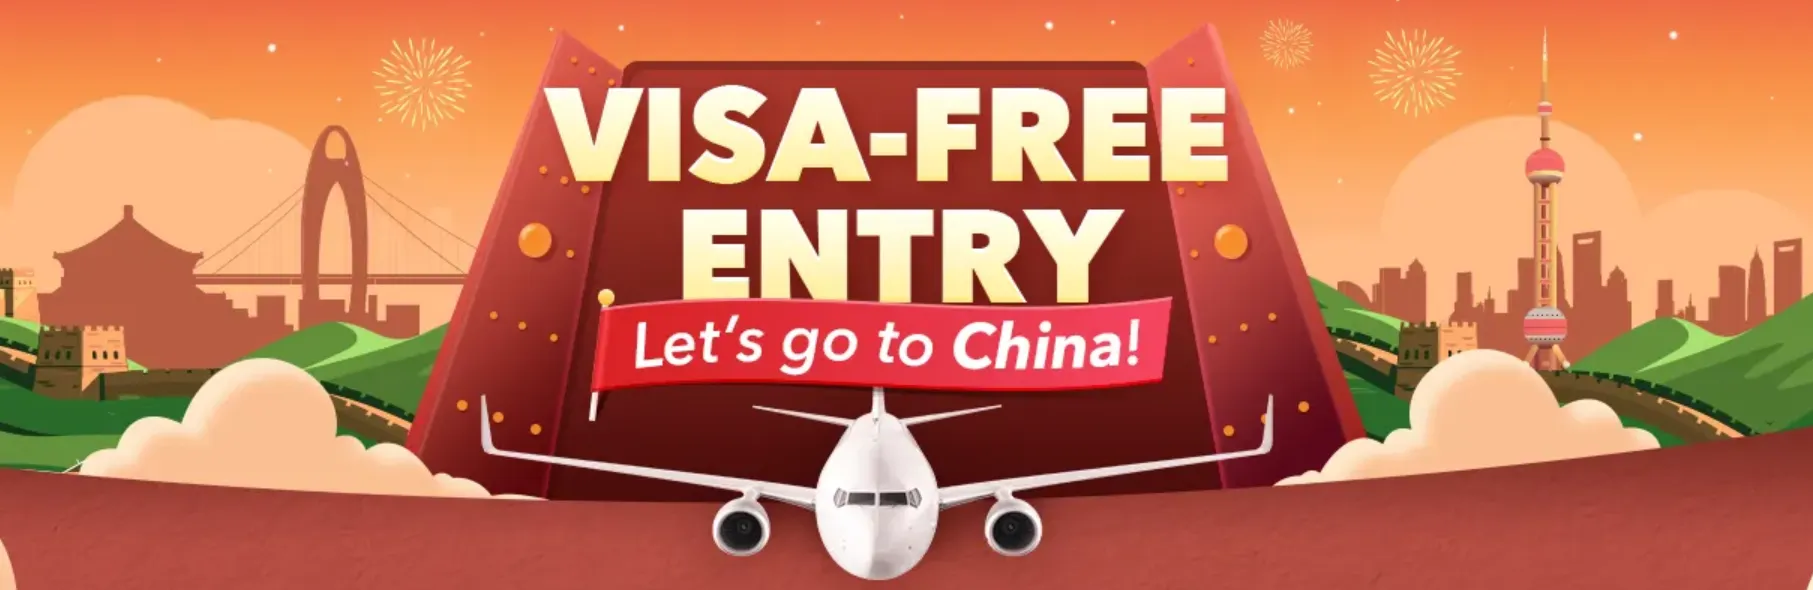 Trip.com Promo Code Malaysia: Visa Free Entry China